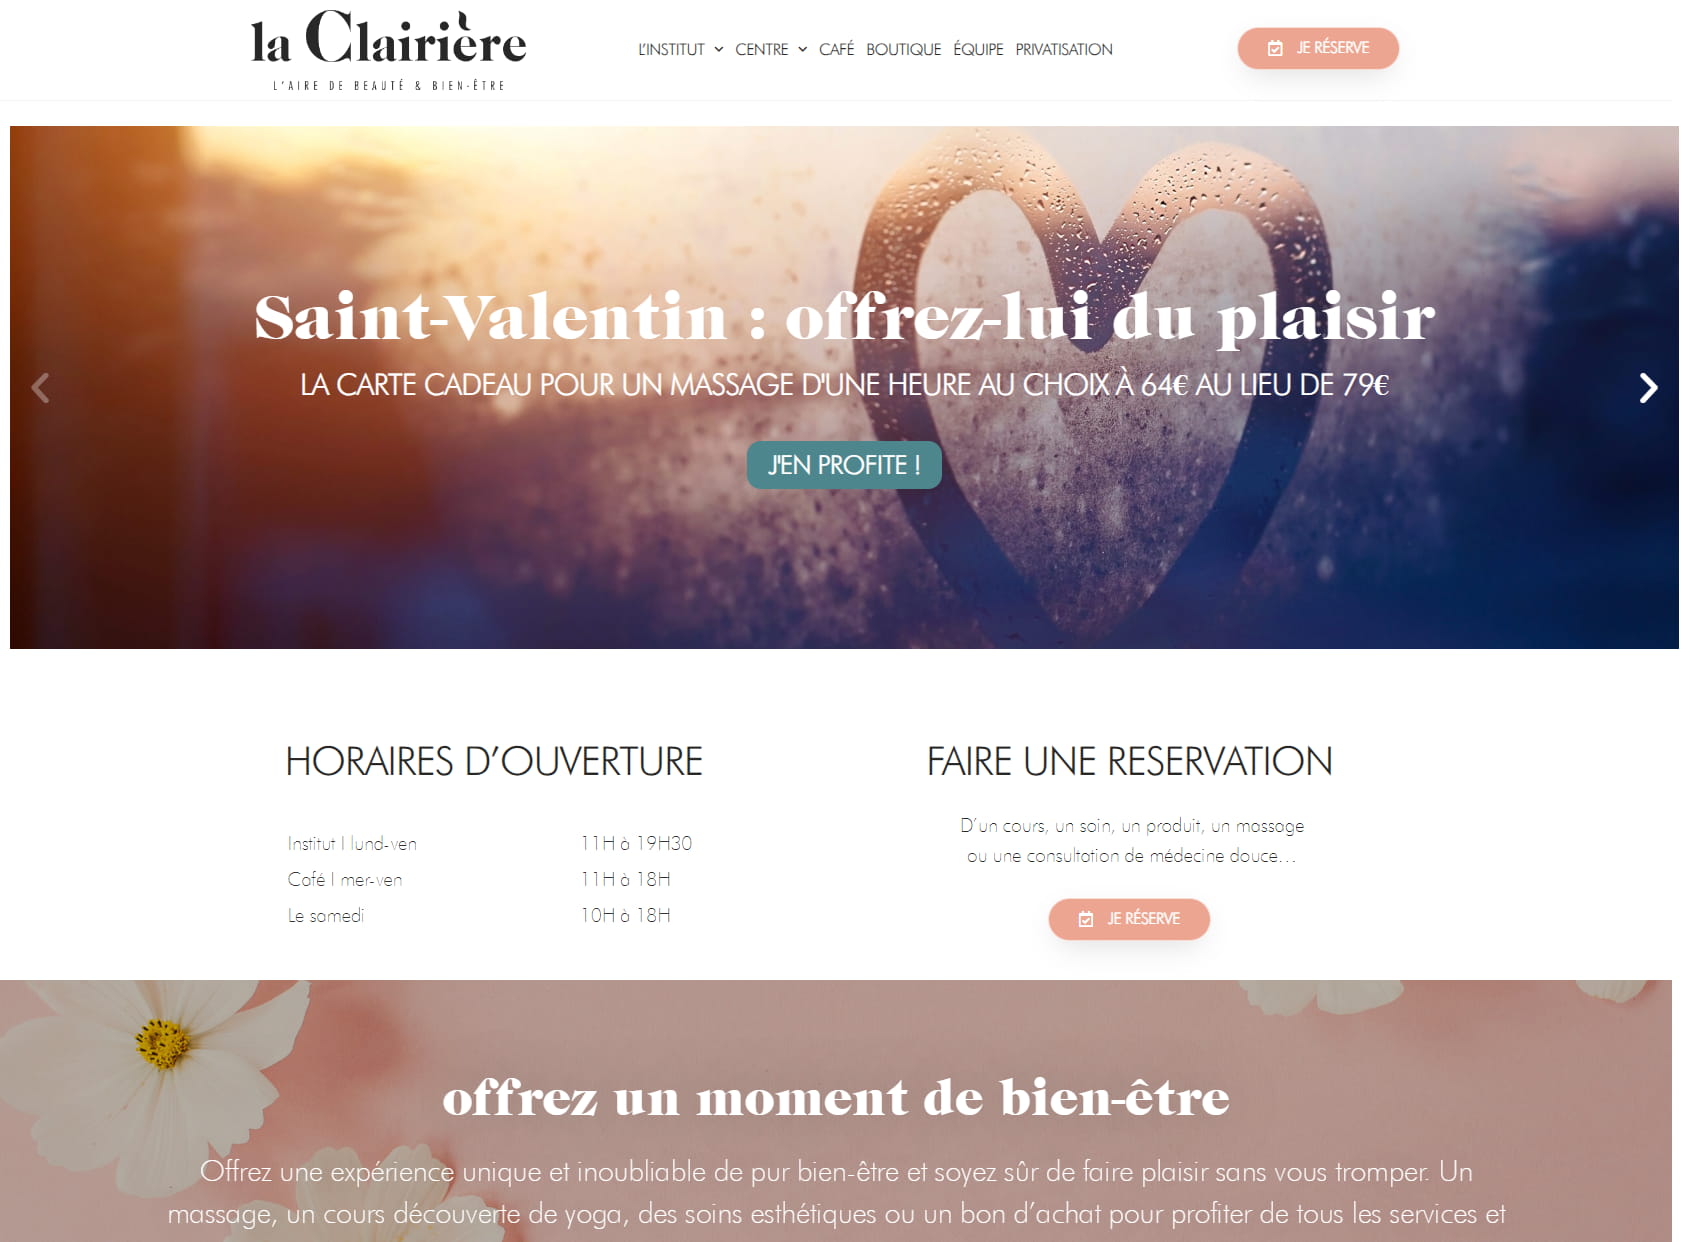 La Clairière Pantin - Institute | Center Yoga And Pilates | Coffee | Shop